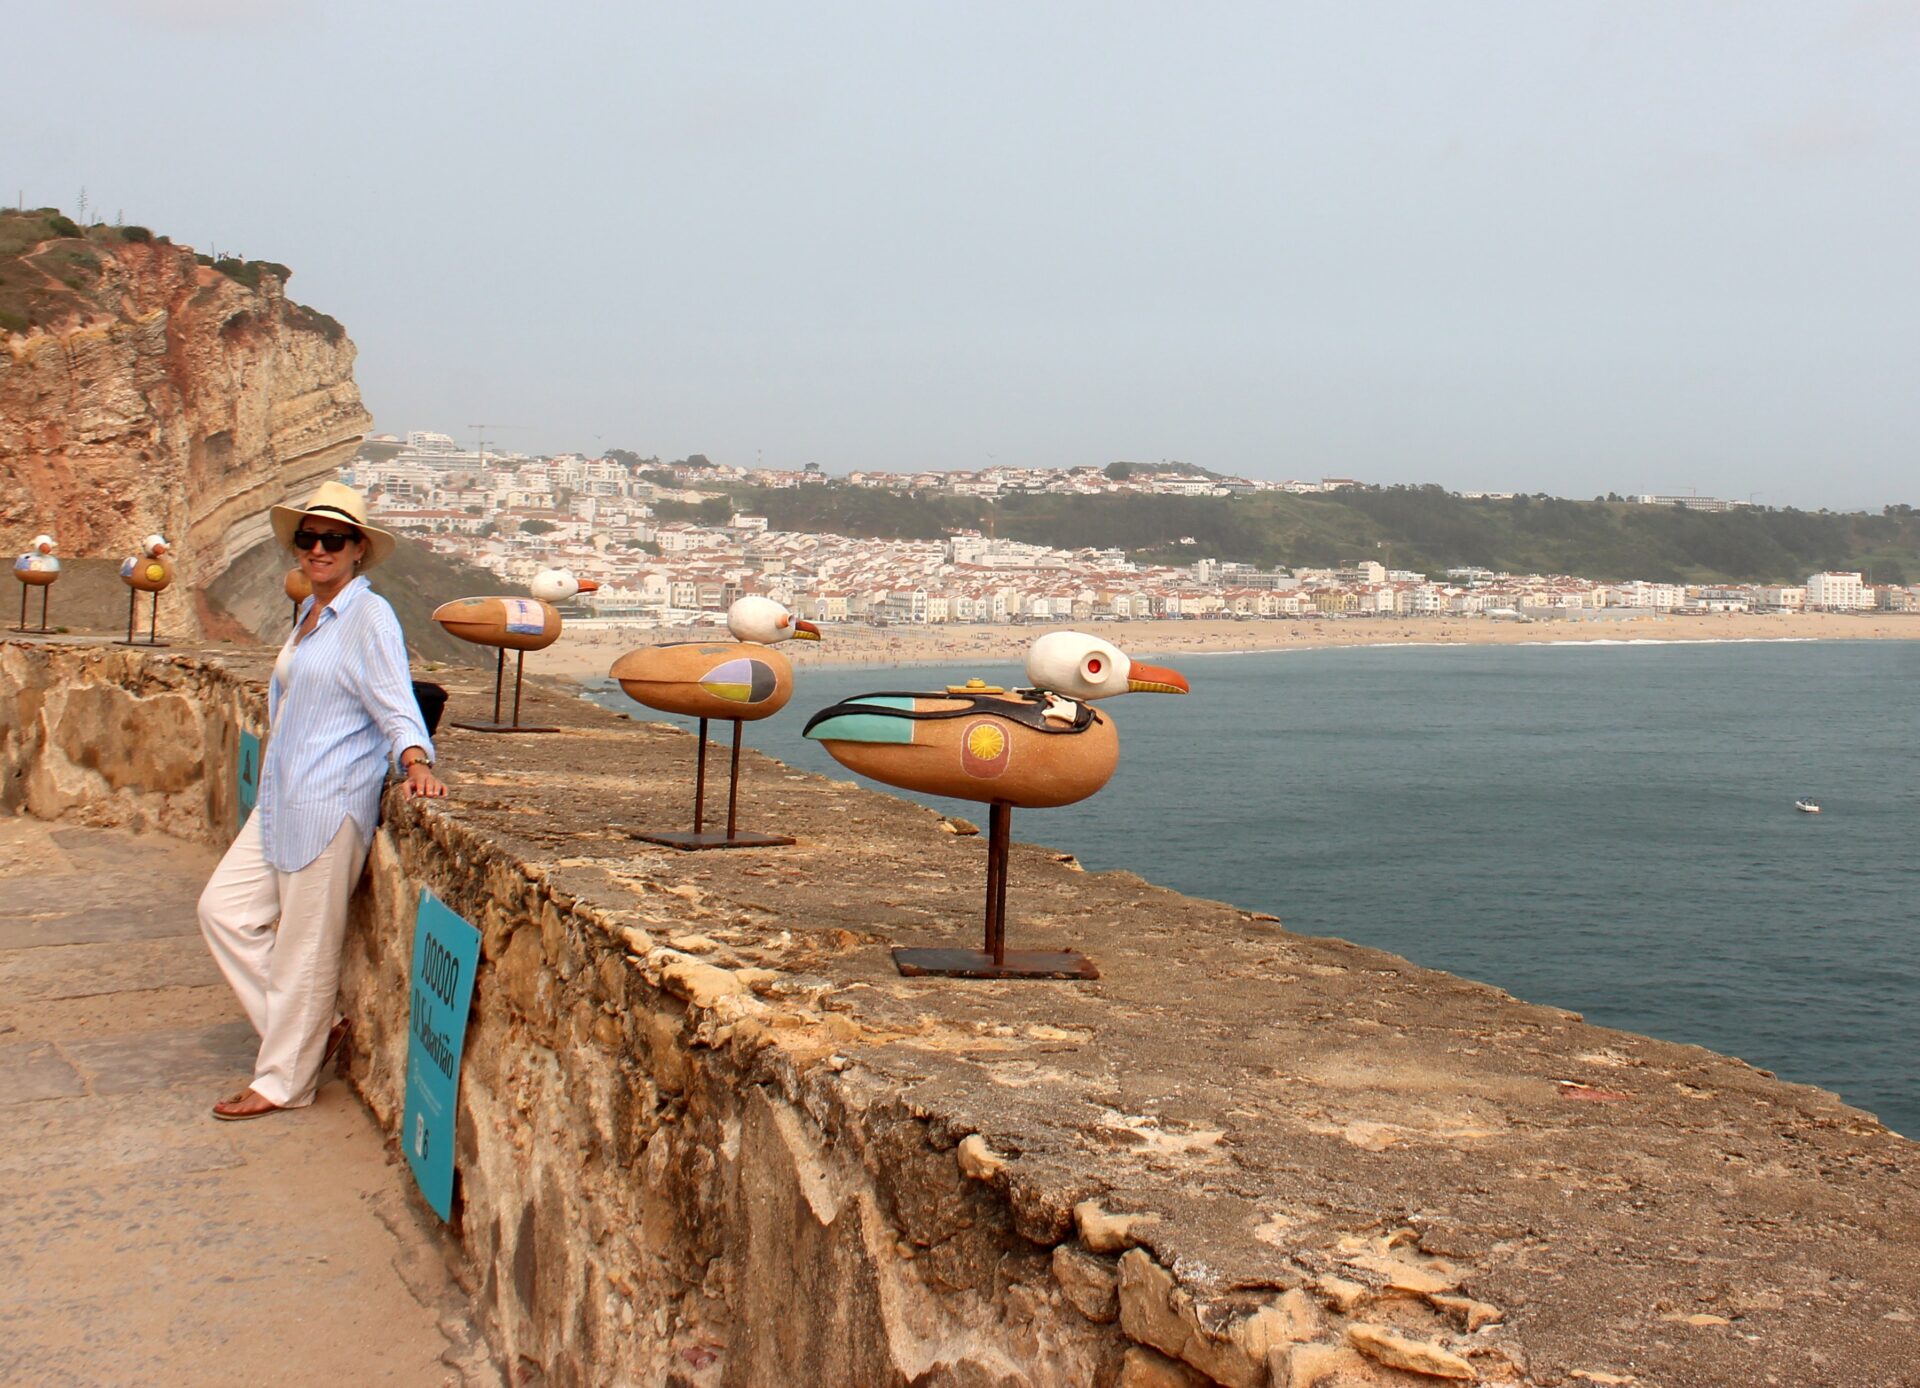 O que ver em Nazaré, Portugal?: Explorando os Encantos de Nazaré em Portugal